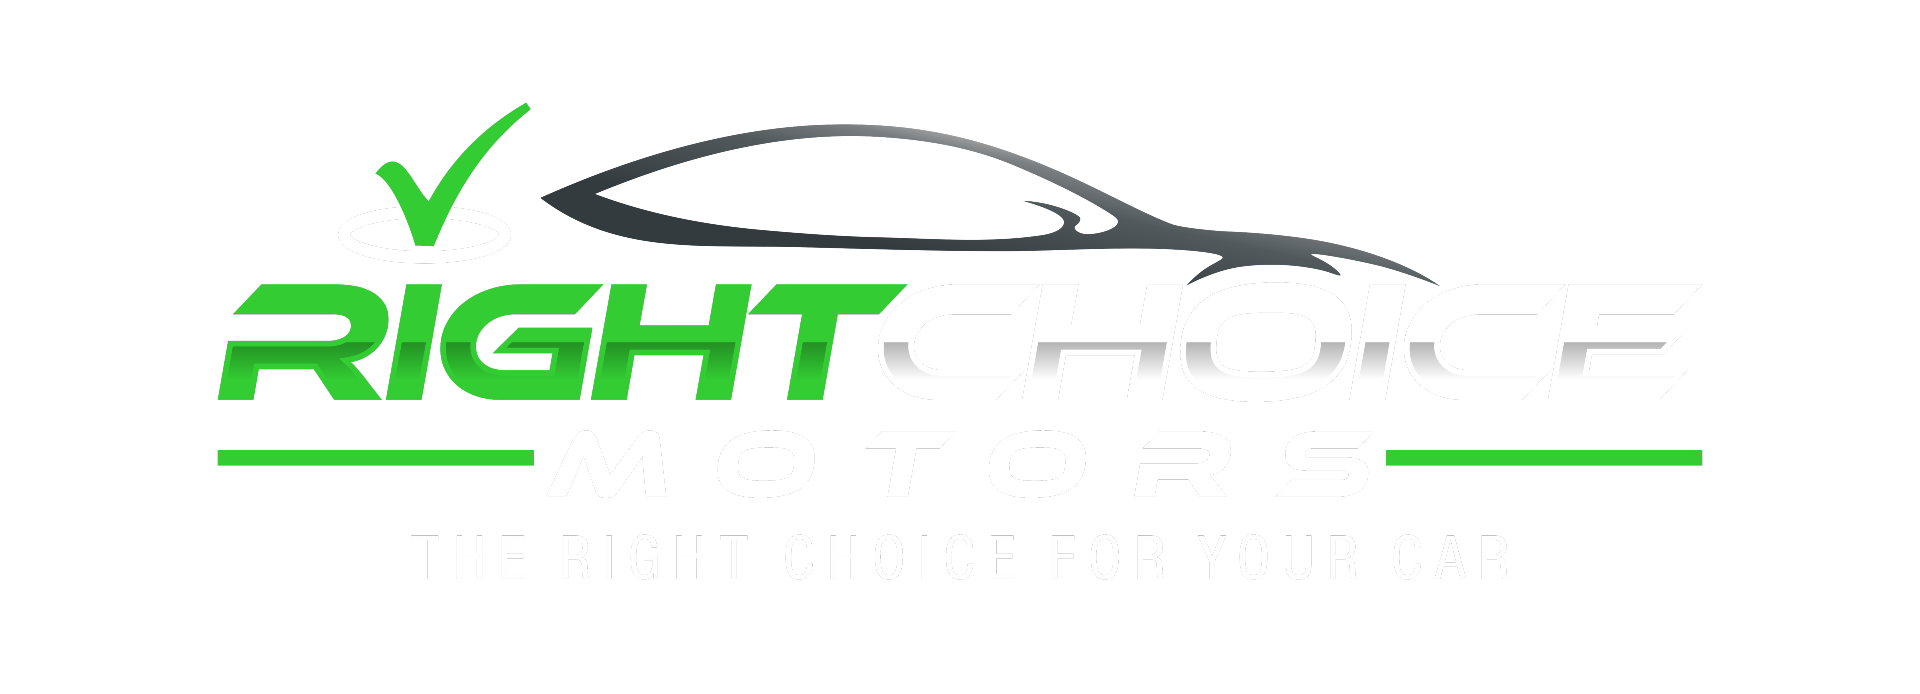 right choice motors logo